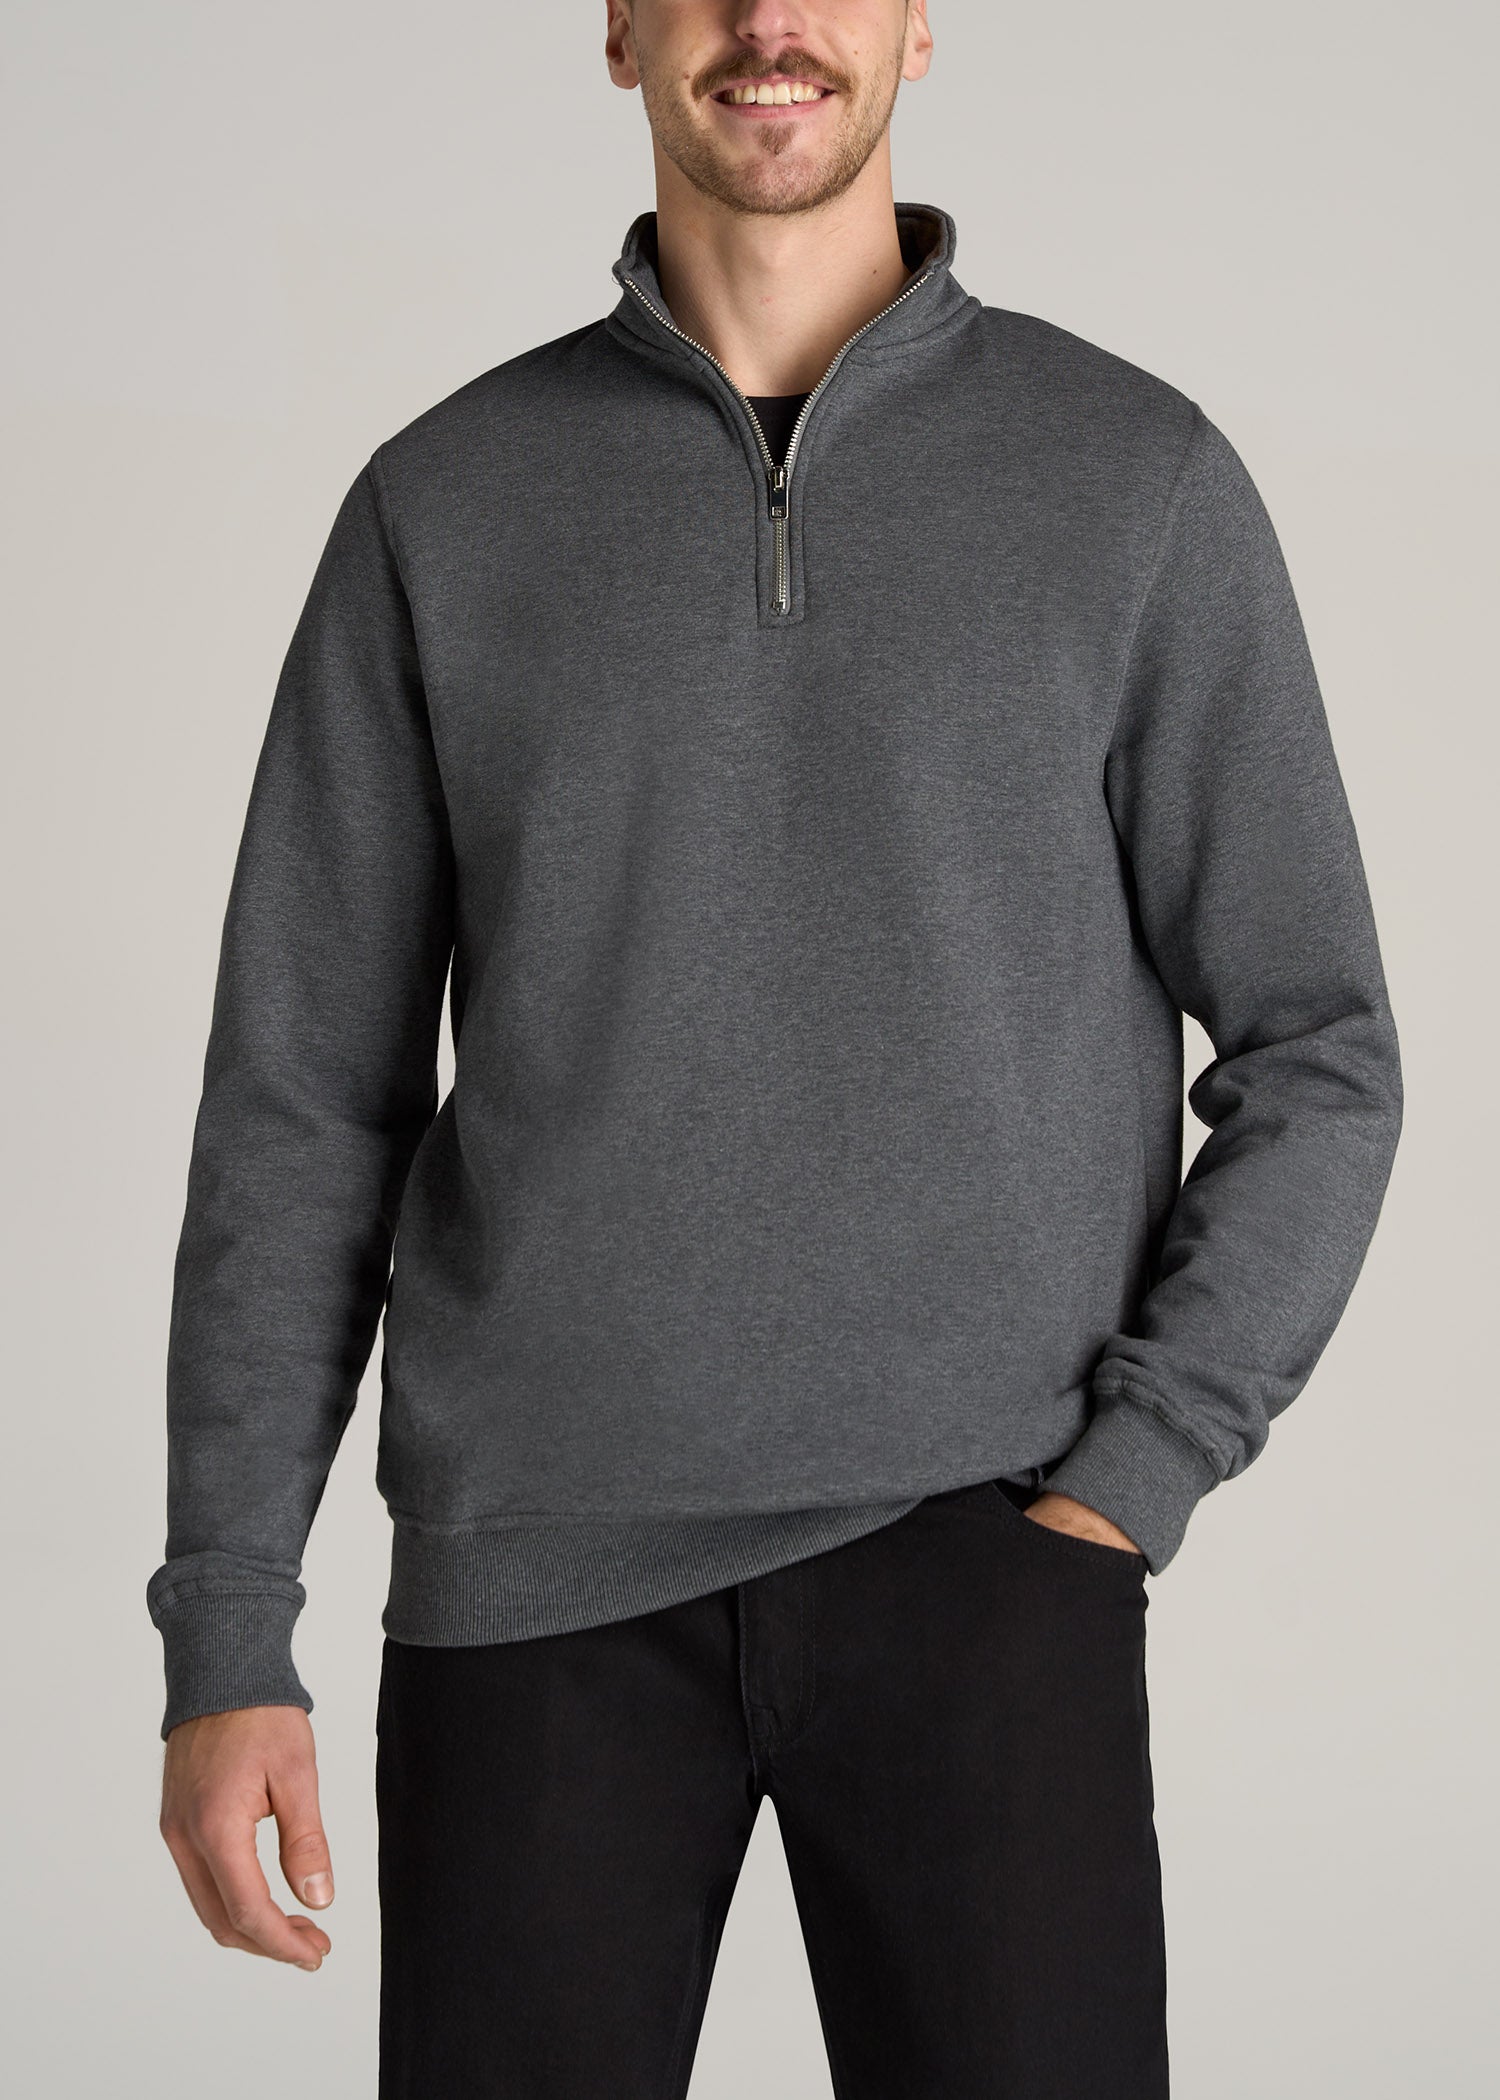 Wearever Fleece Quarter-Zip Tall Men's Sweatshirt in Charcoal Mix